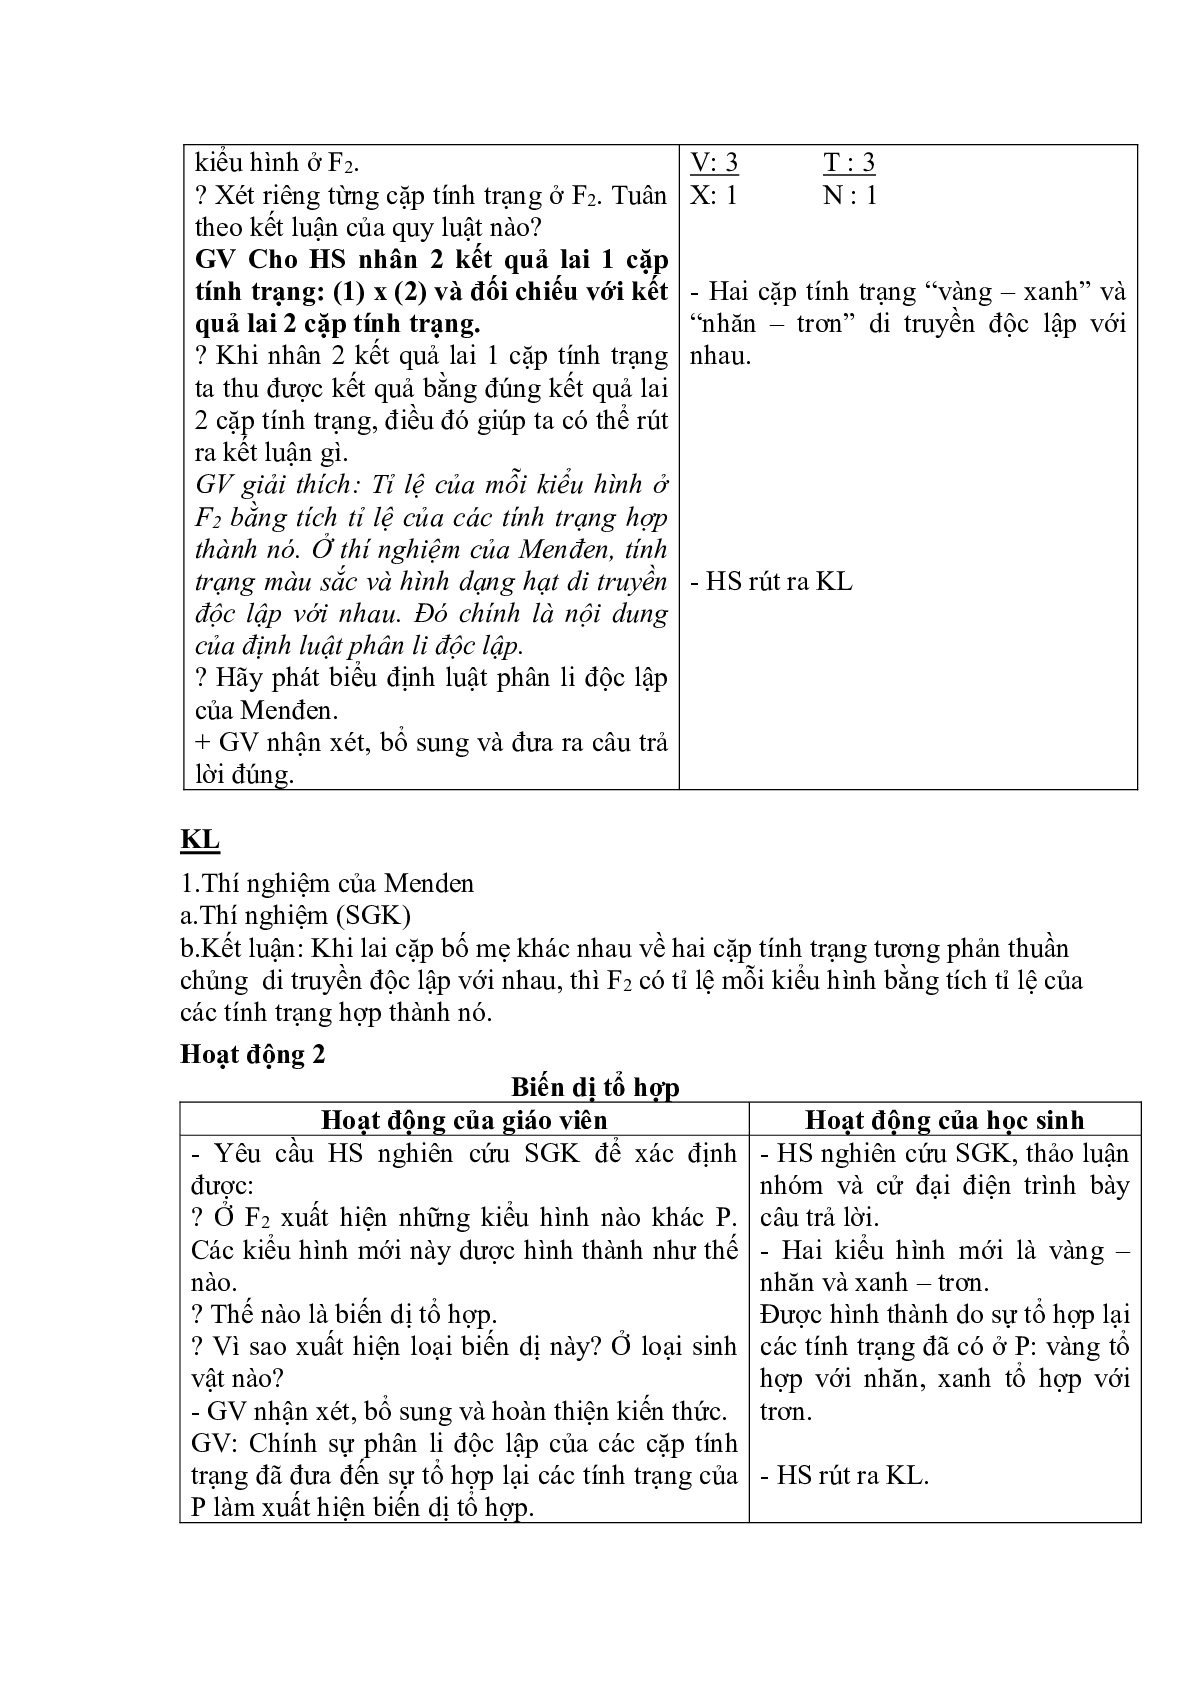 Giáo án Sinh học 9 Bài 4: Lai hai cặp tính trạng mới, chuẩn nhất (trang 2)